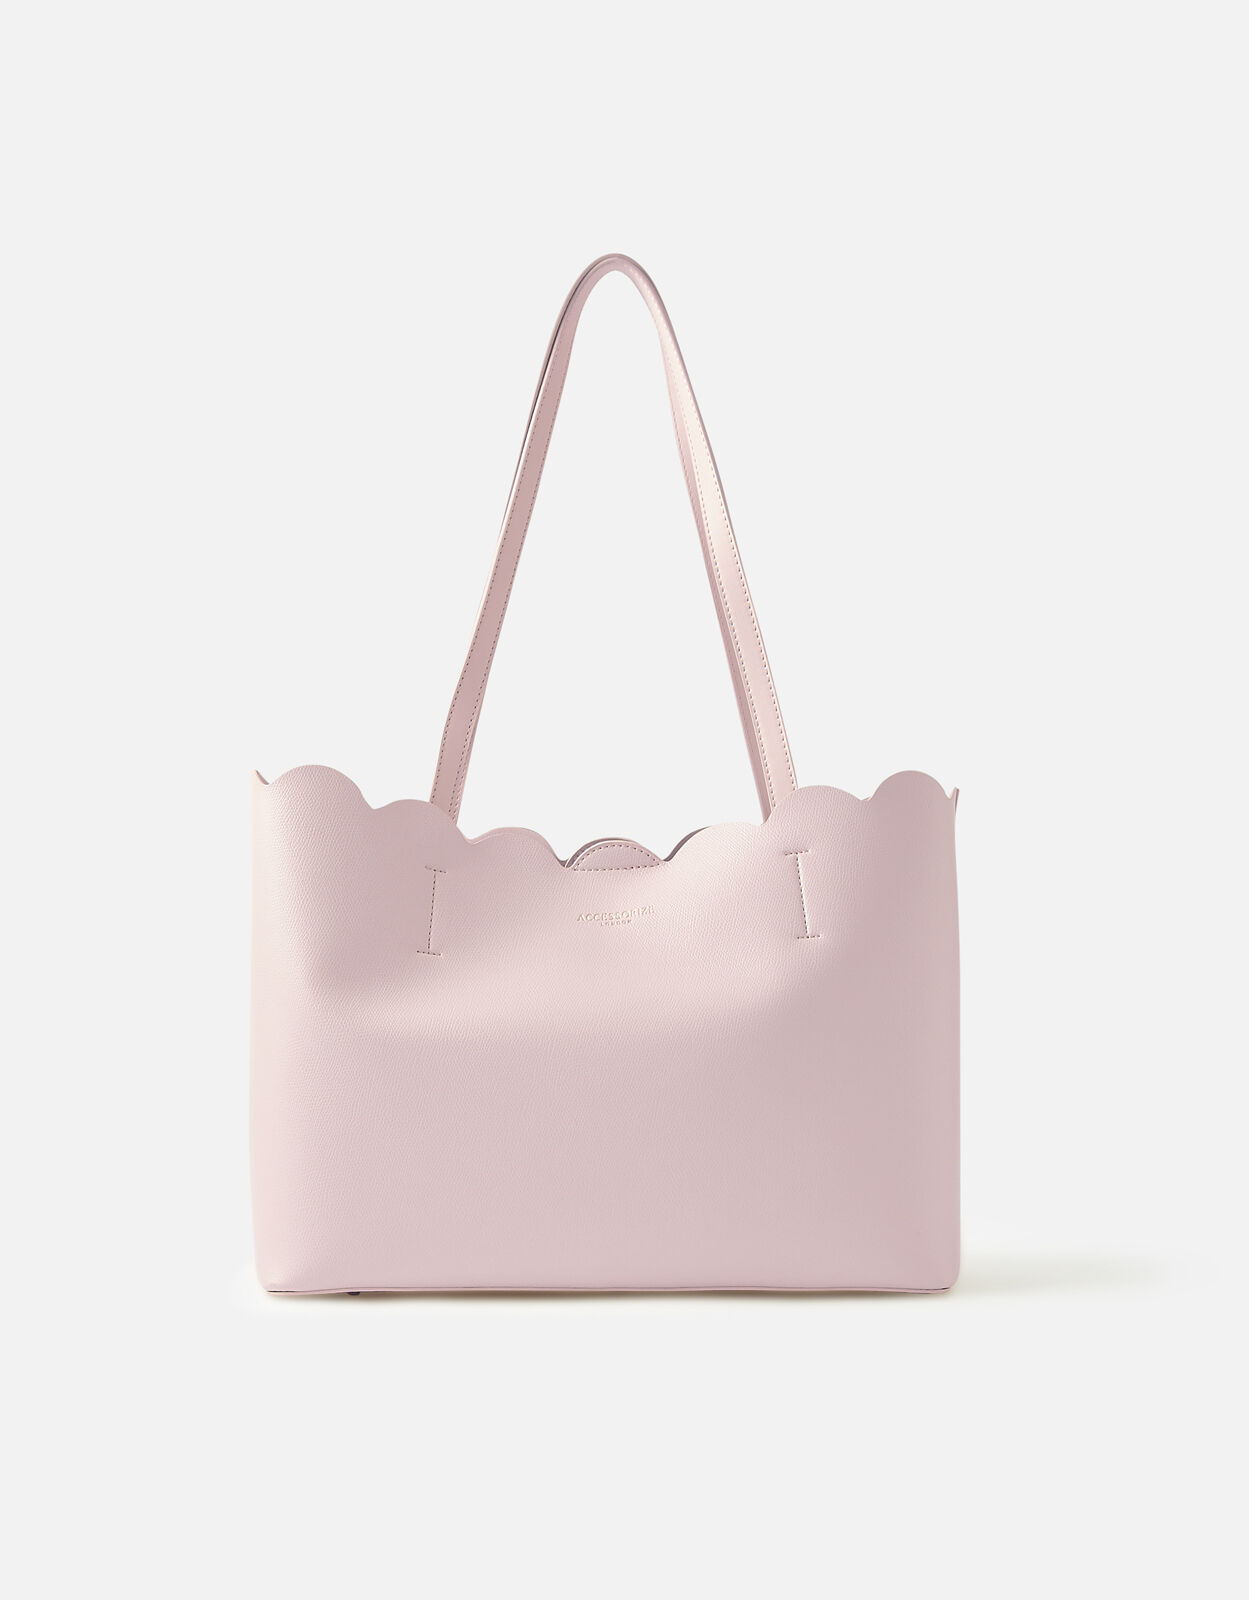 うのにもお得な ludlow Scalloped leather shopping bag | yasnabeauty.com